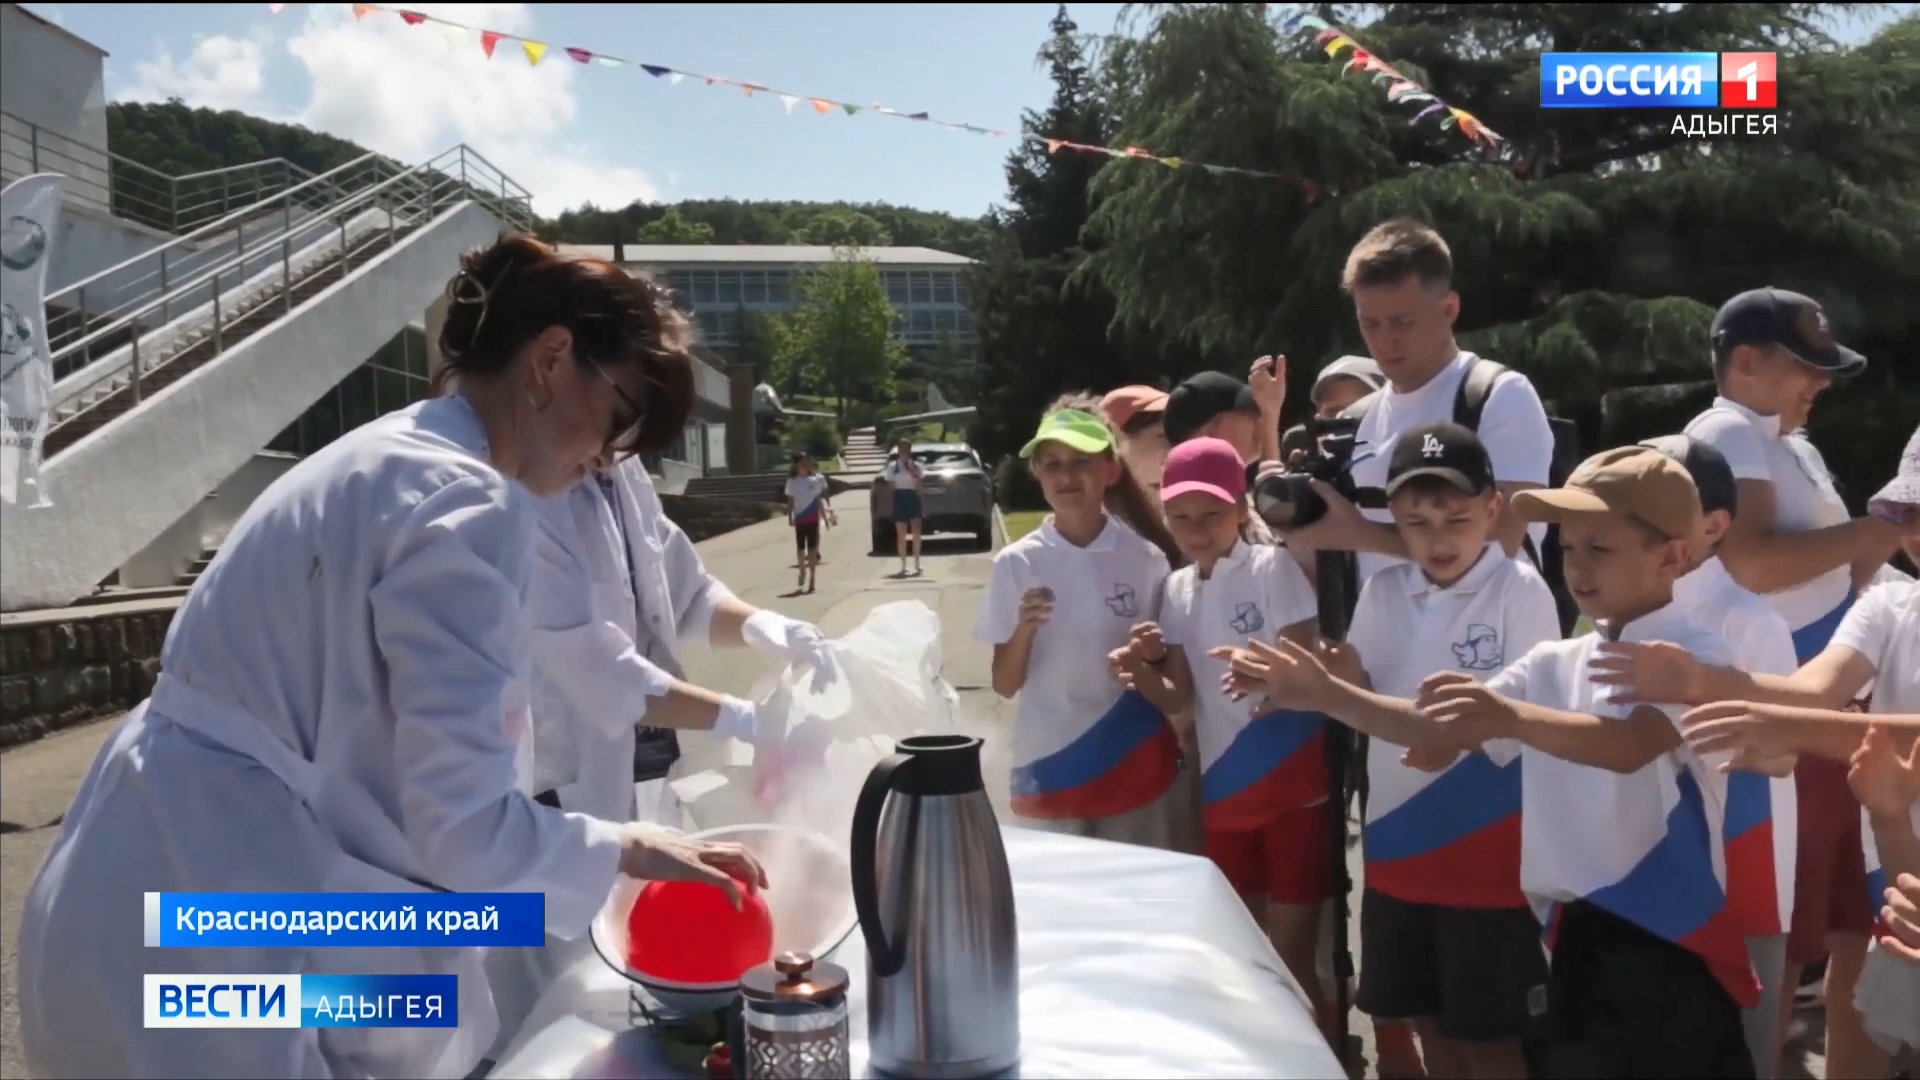 Во всероссийском детском центре "Орленок" стартовал цикл фестивалей проекта АГУ "Наука Вокруг"